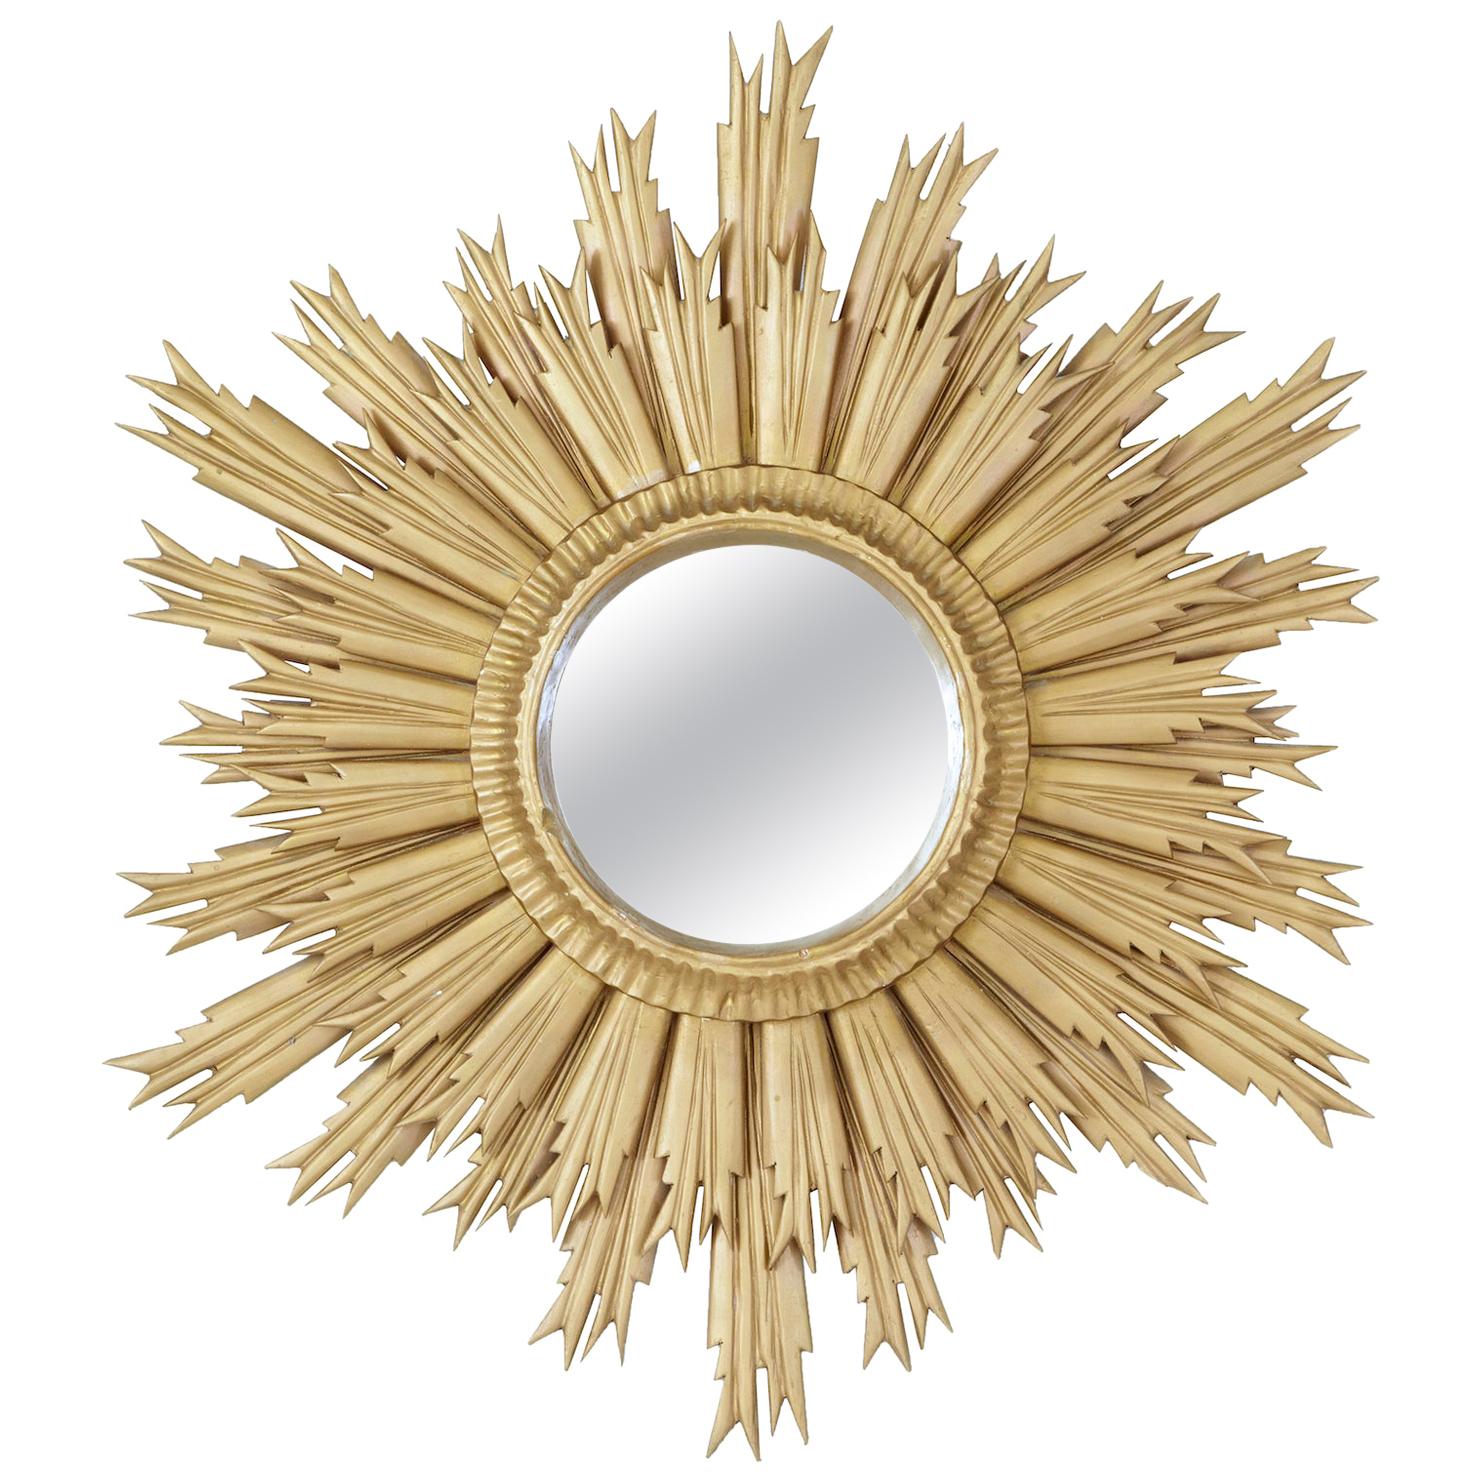 Mid-20th Century Sunburst Mirror